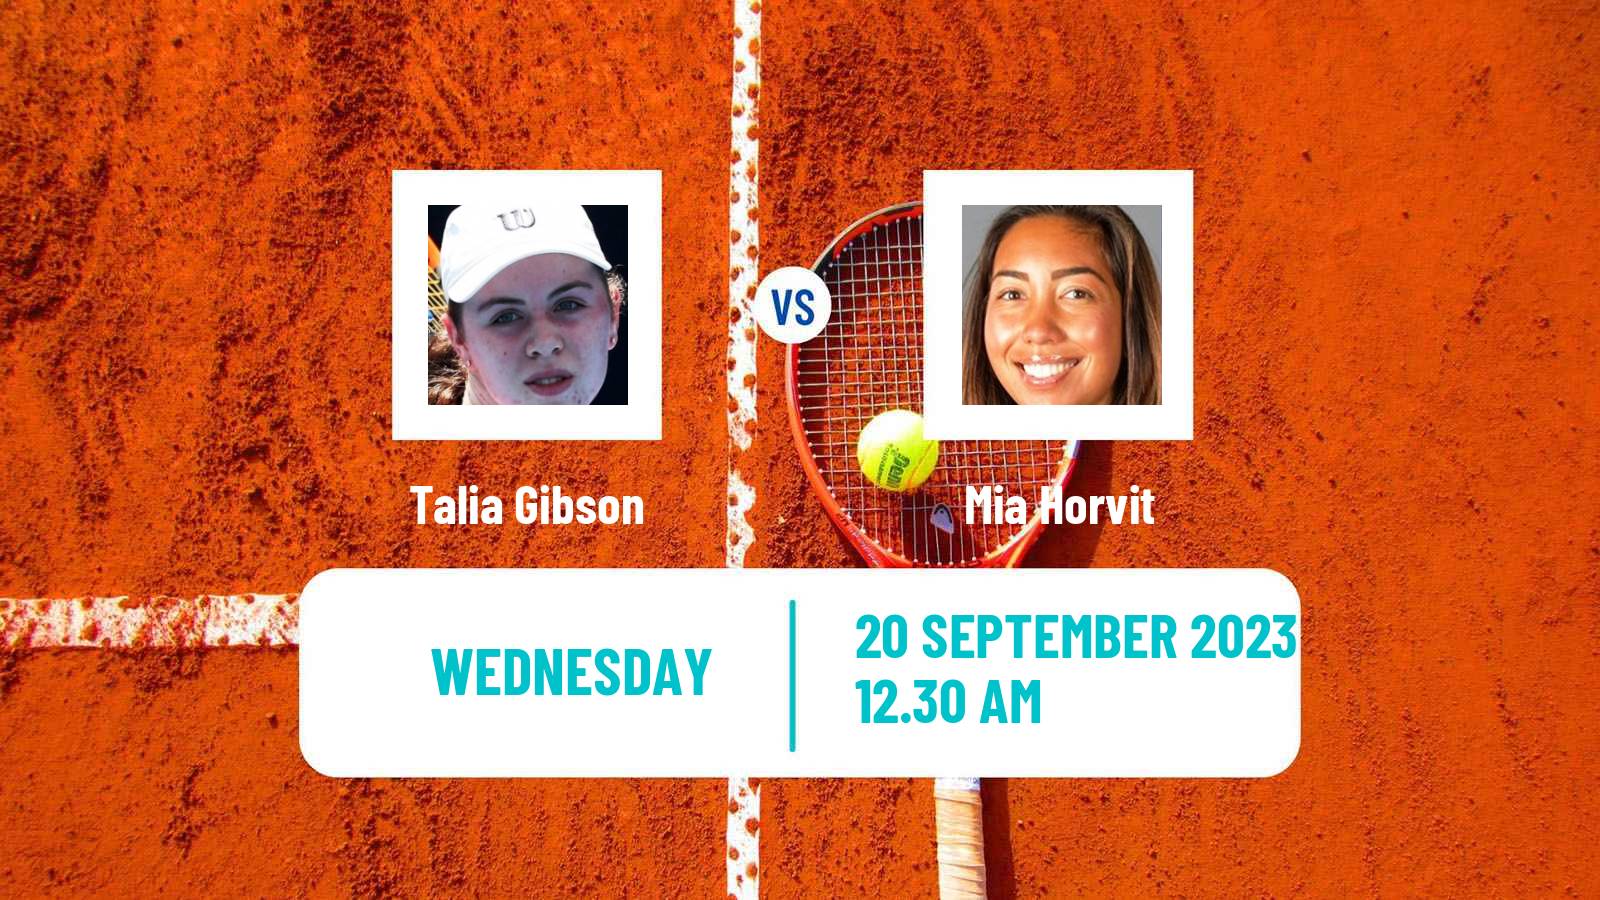 Tennis ITF W25 Perth 2 Women Talia Gibson - Mia Horvit